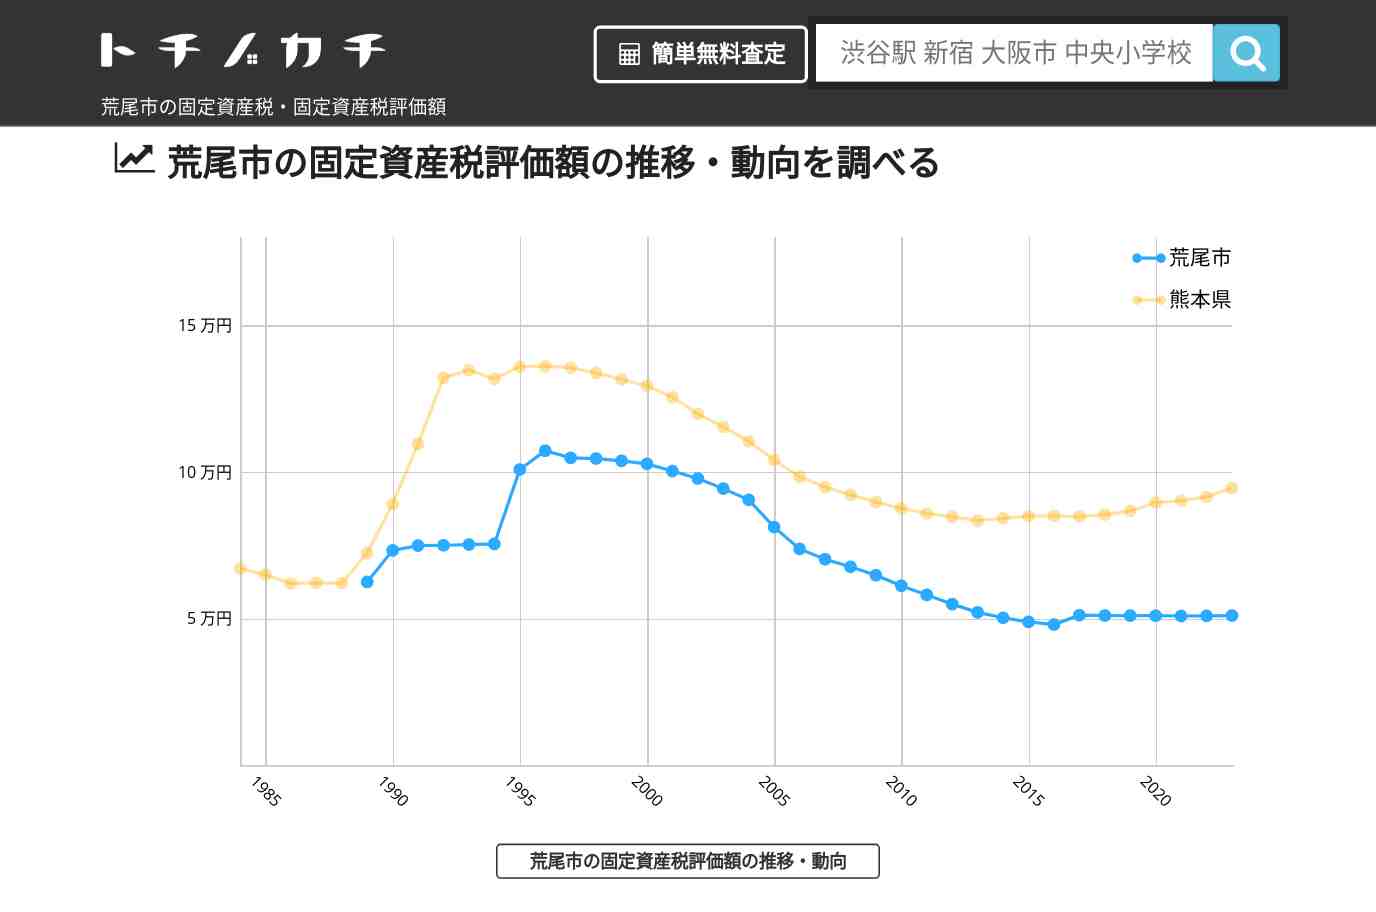 桜山小学校(熊本県 荒尾市)周辺の固定資産税・固定資産税評価額 | トチノカチ